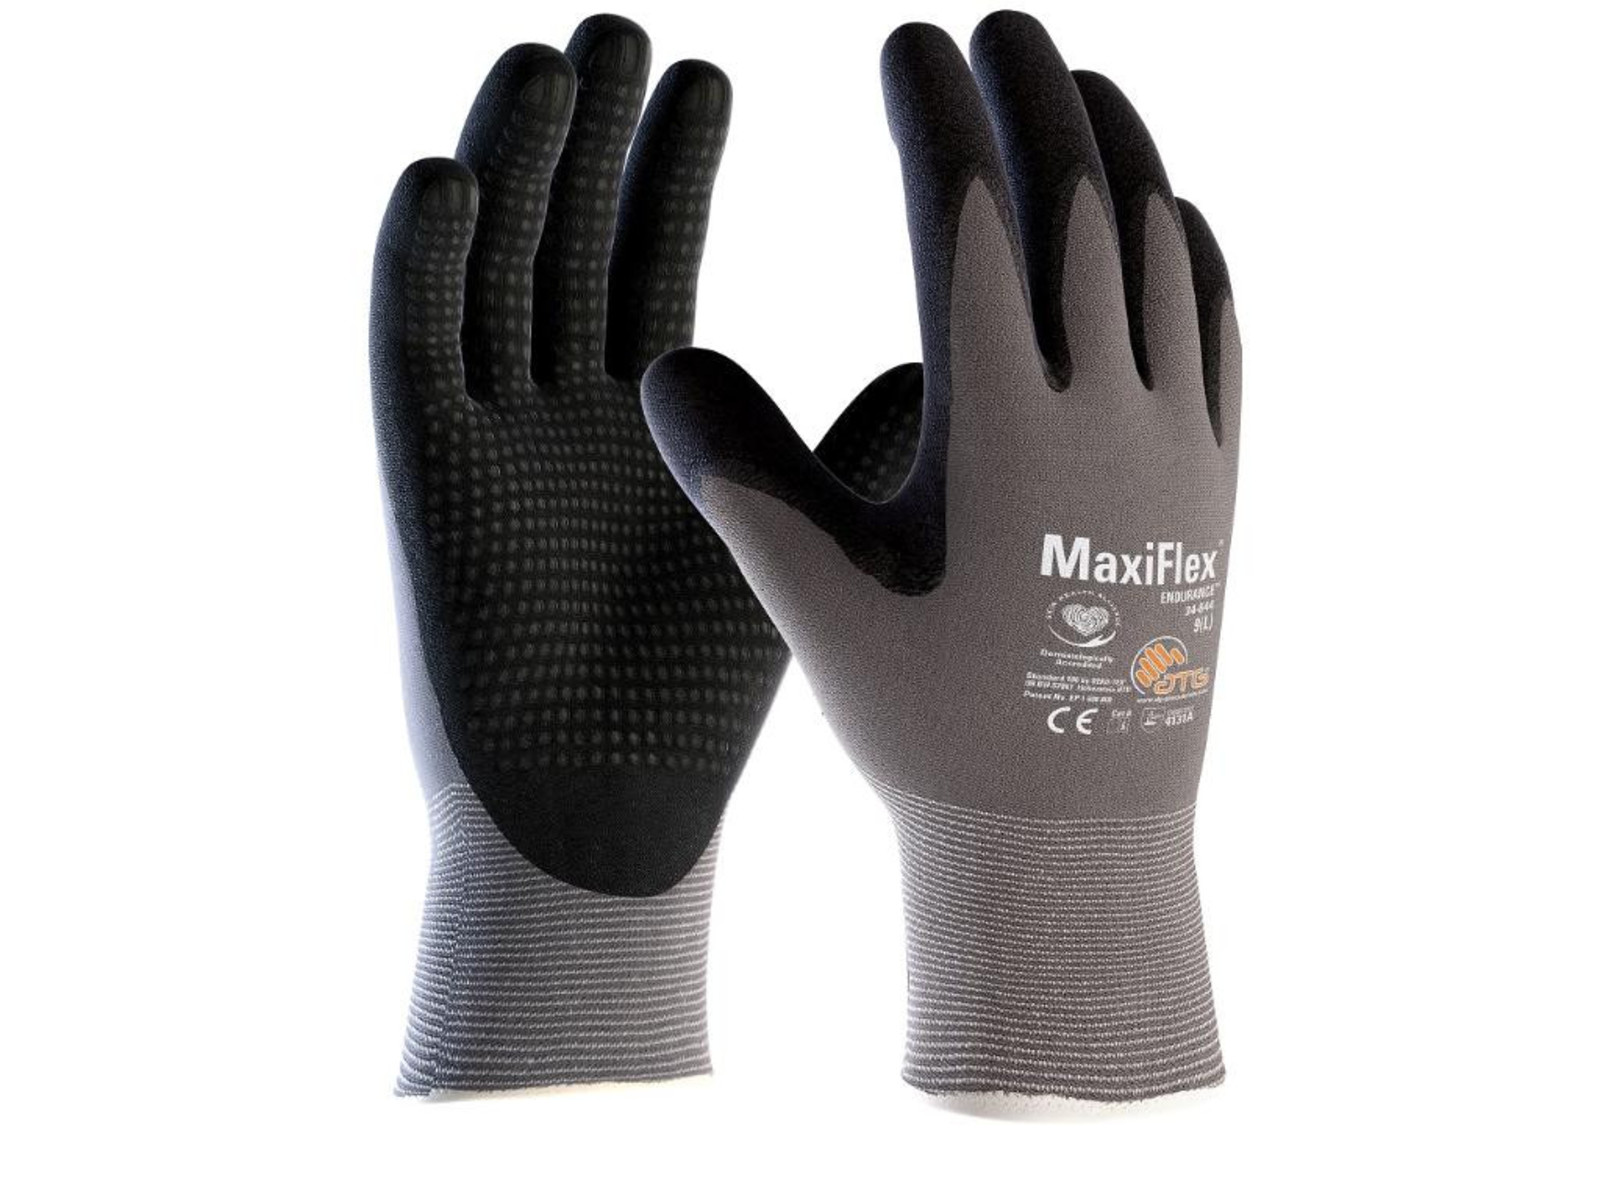 Pracovné povrstvené rukavice ATG MaxiFlex Endurance 34-844 - veľkosť: 8/M, farba: sivá